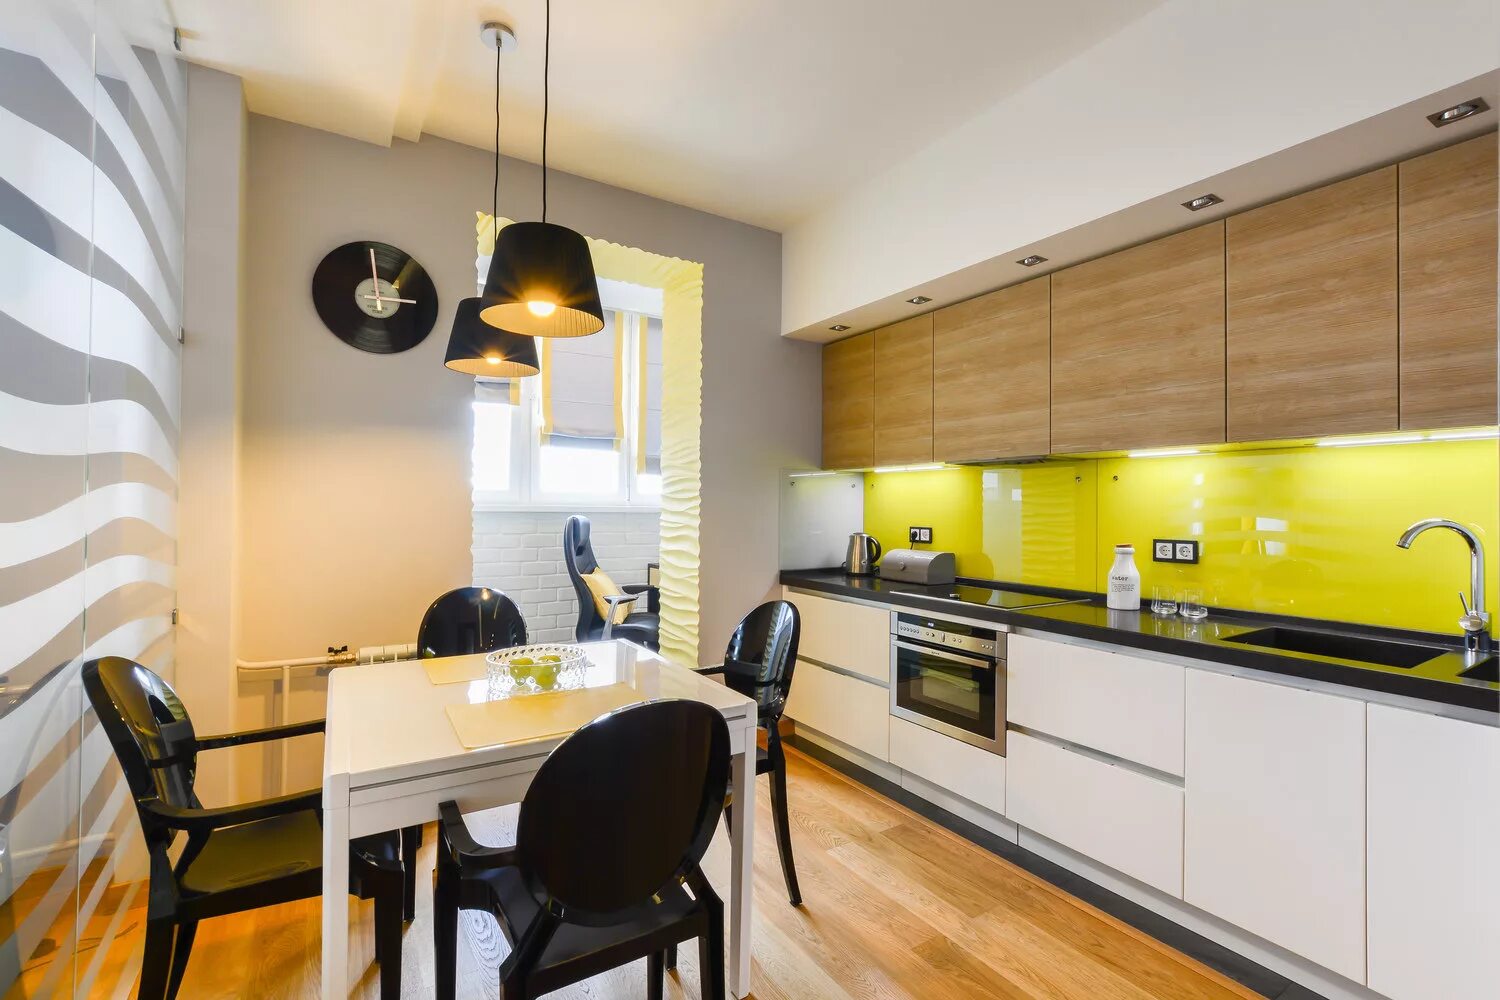 Интерьер кухни. Кухня в желтом цвете. Современный интерьер кухни. Желтая кухня в интерьере.